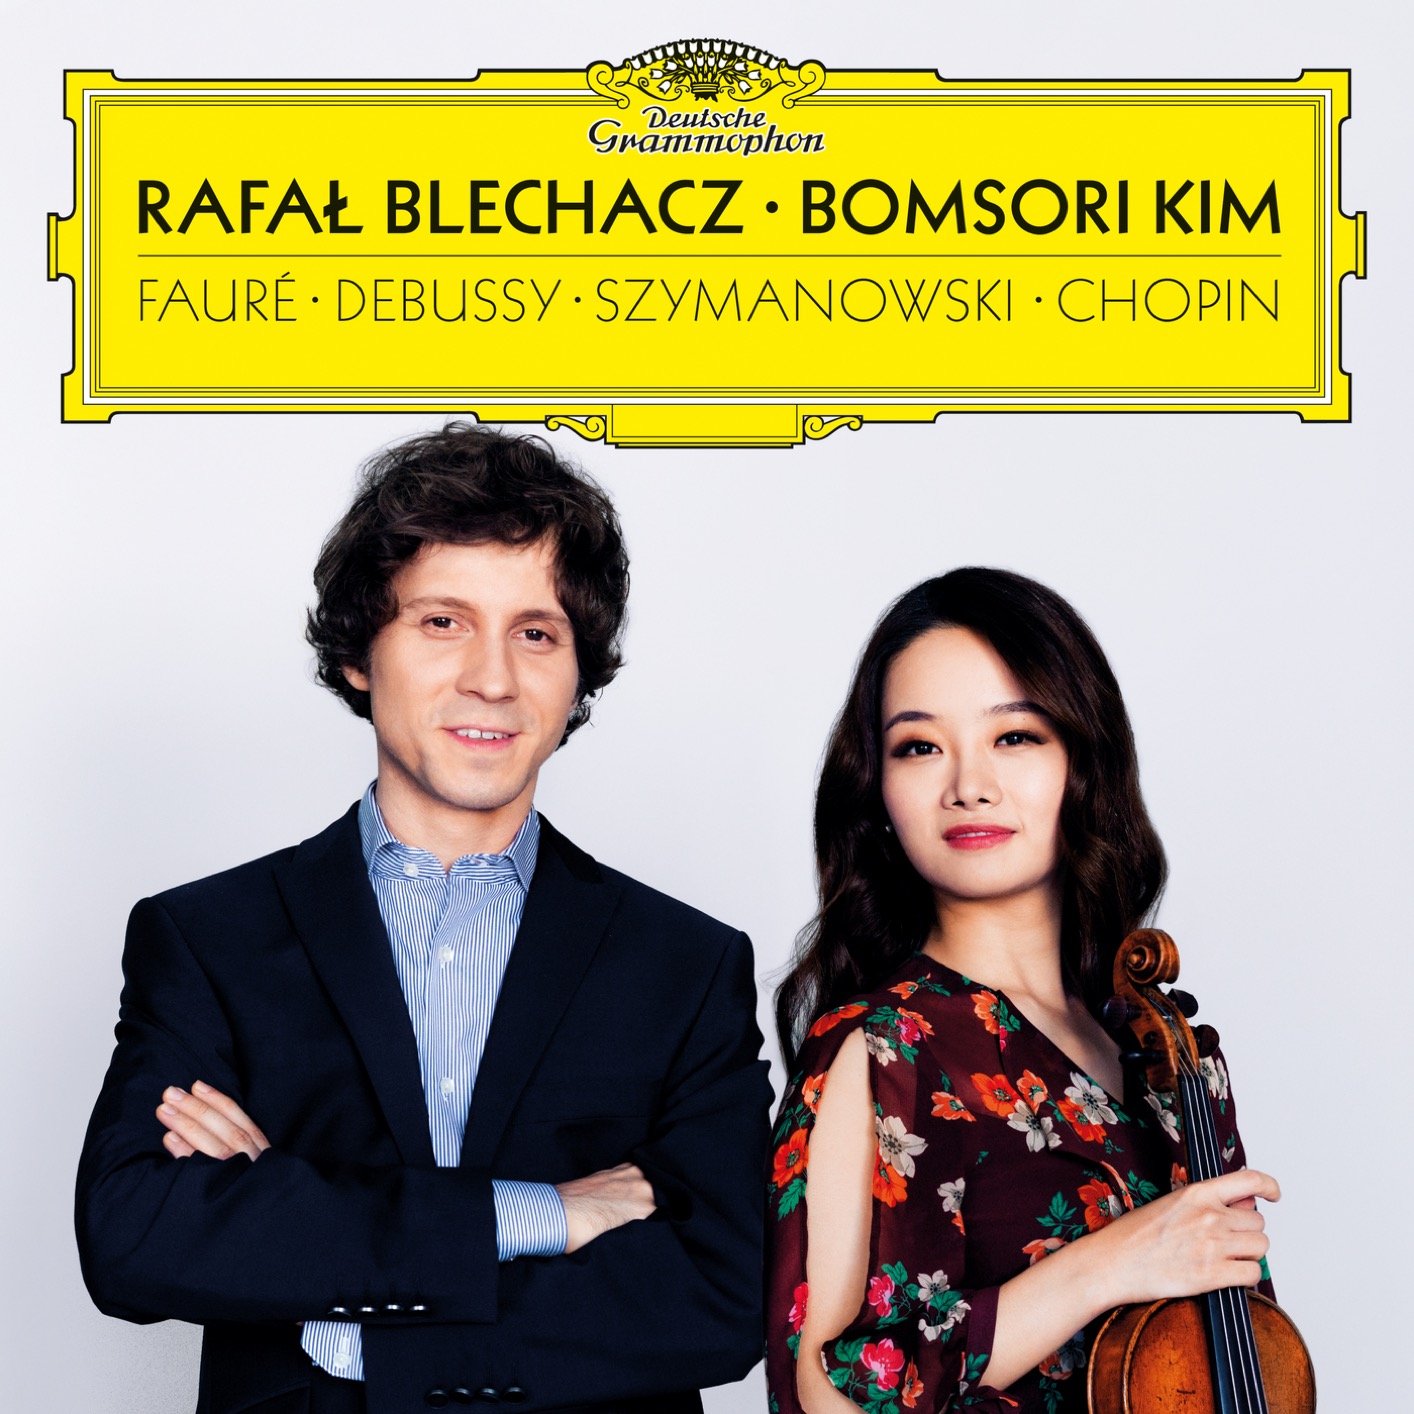 Bomsori Kim & Rafal Blechacz – Faure, Debussy, Szymanowski, Chopin (2019) [FLAC 24bit/96kHz]